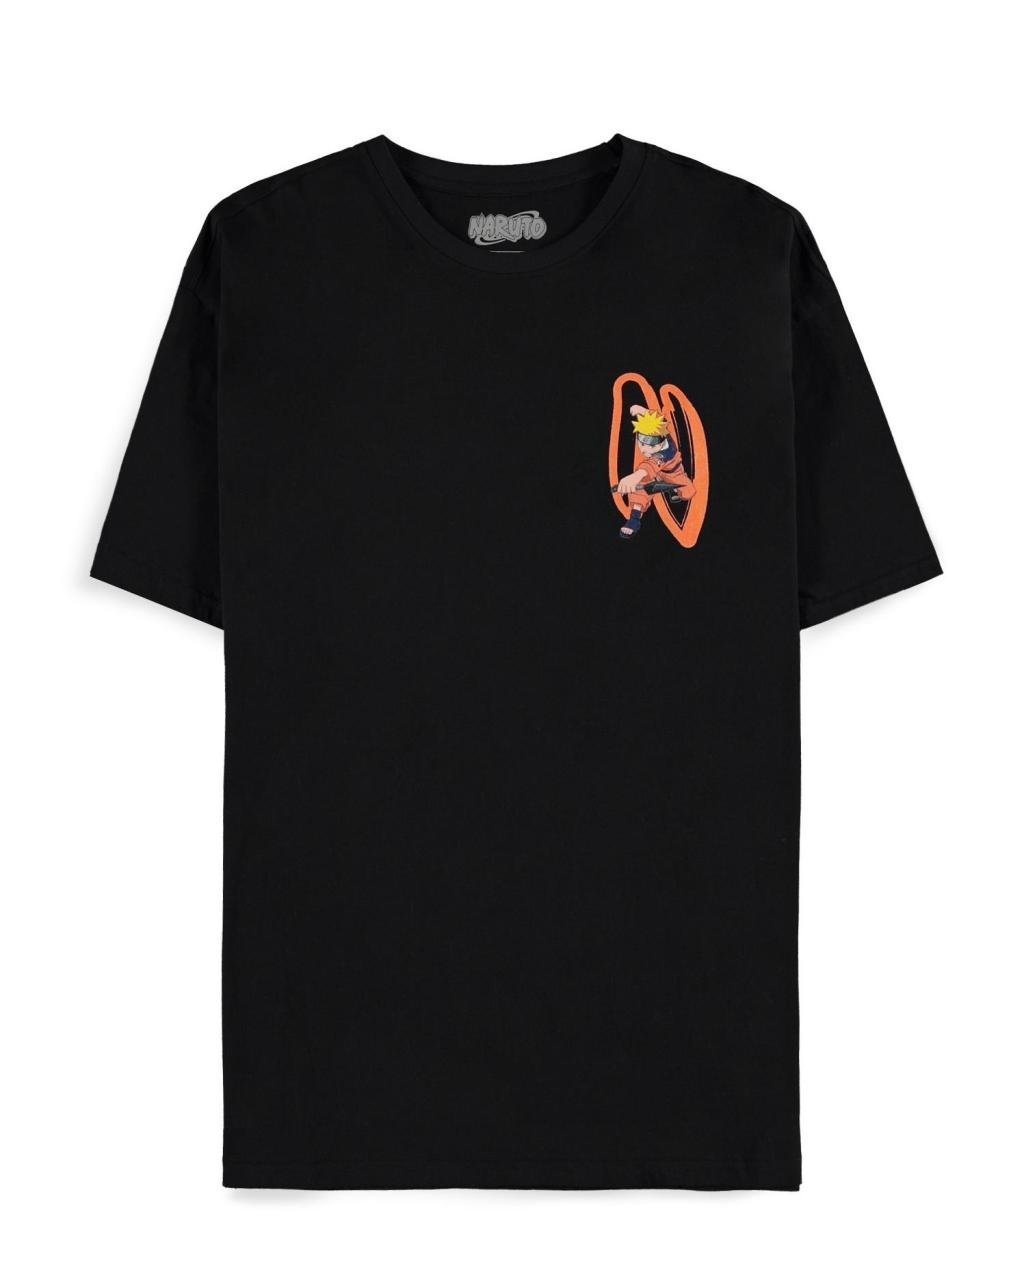 NARUTO - Ninja Way - Men T-Shirt (XXL)